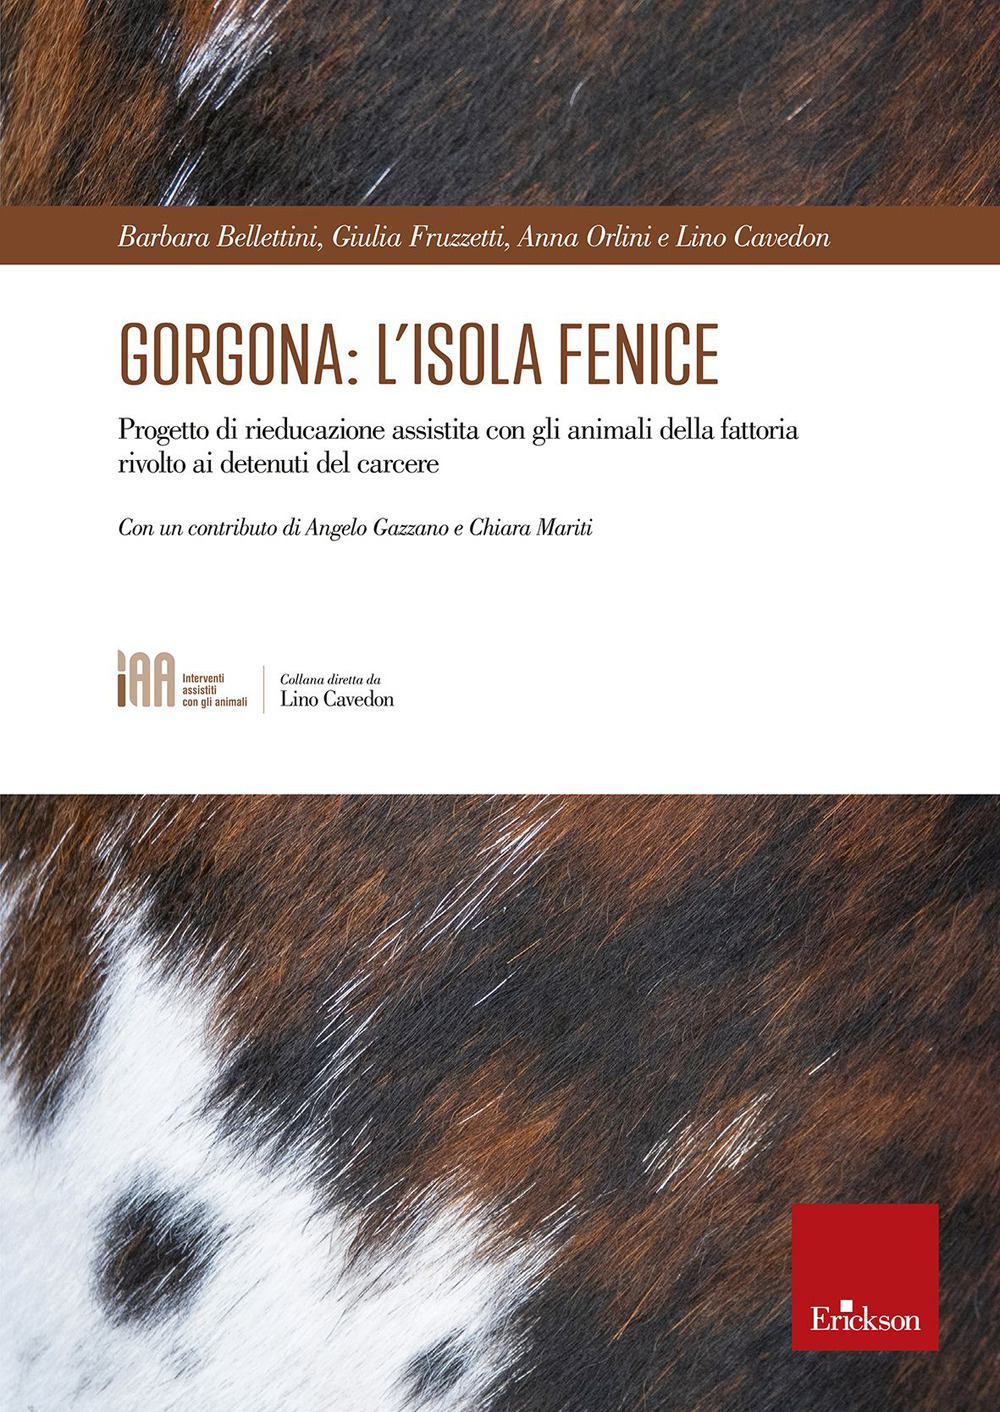 Gorgona: l'isola fenice. Progetto di rieducazione assistita con gli animali della fattoria rivolto ai detenuti del carcere